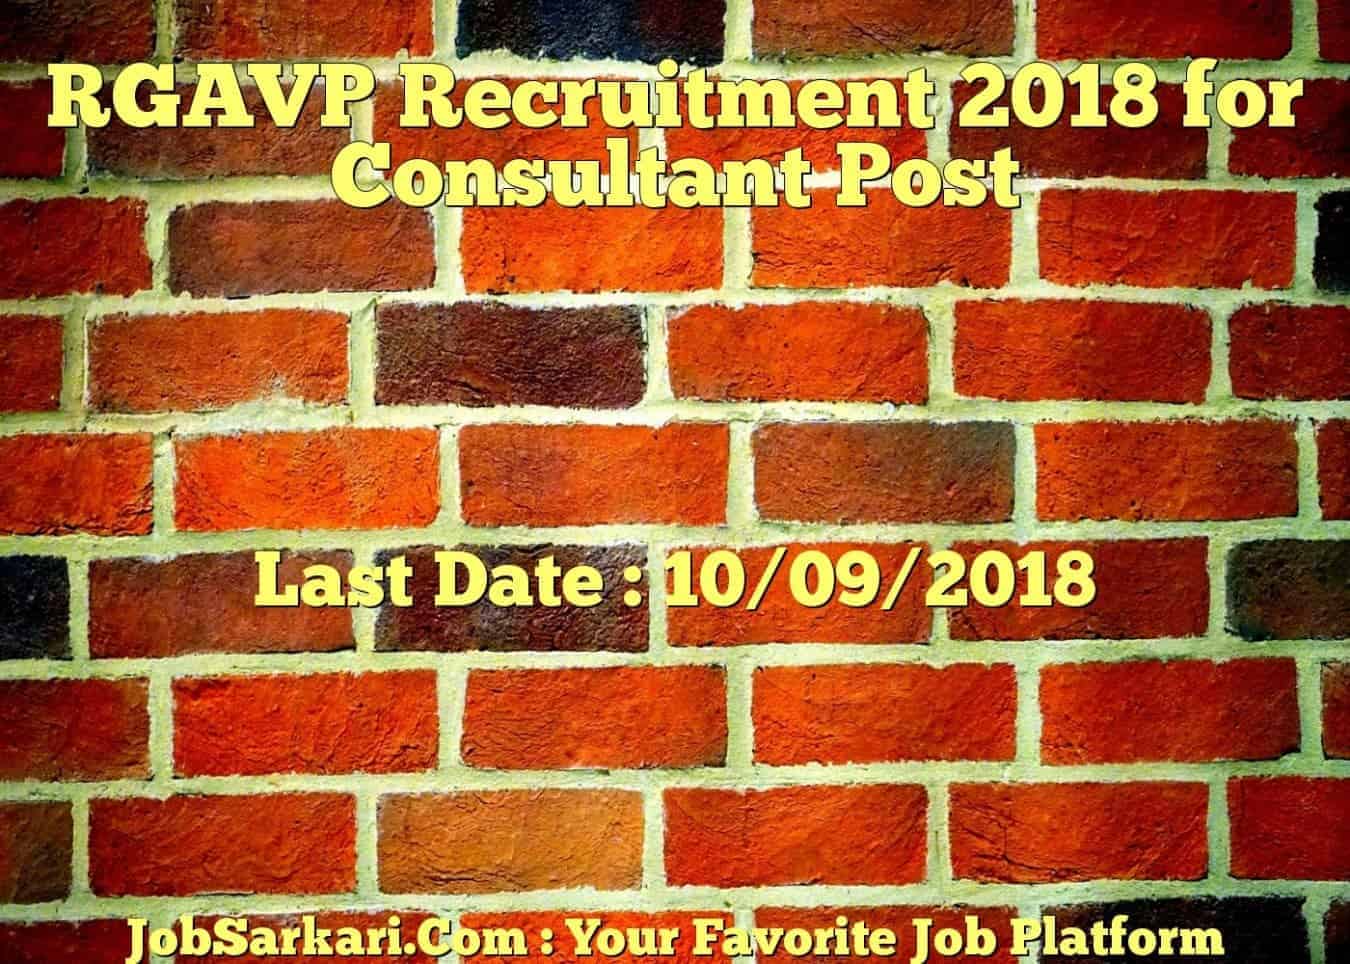 RGAVP Recruitment 2018 for Consultant Post